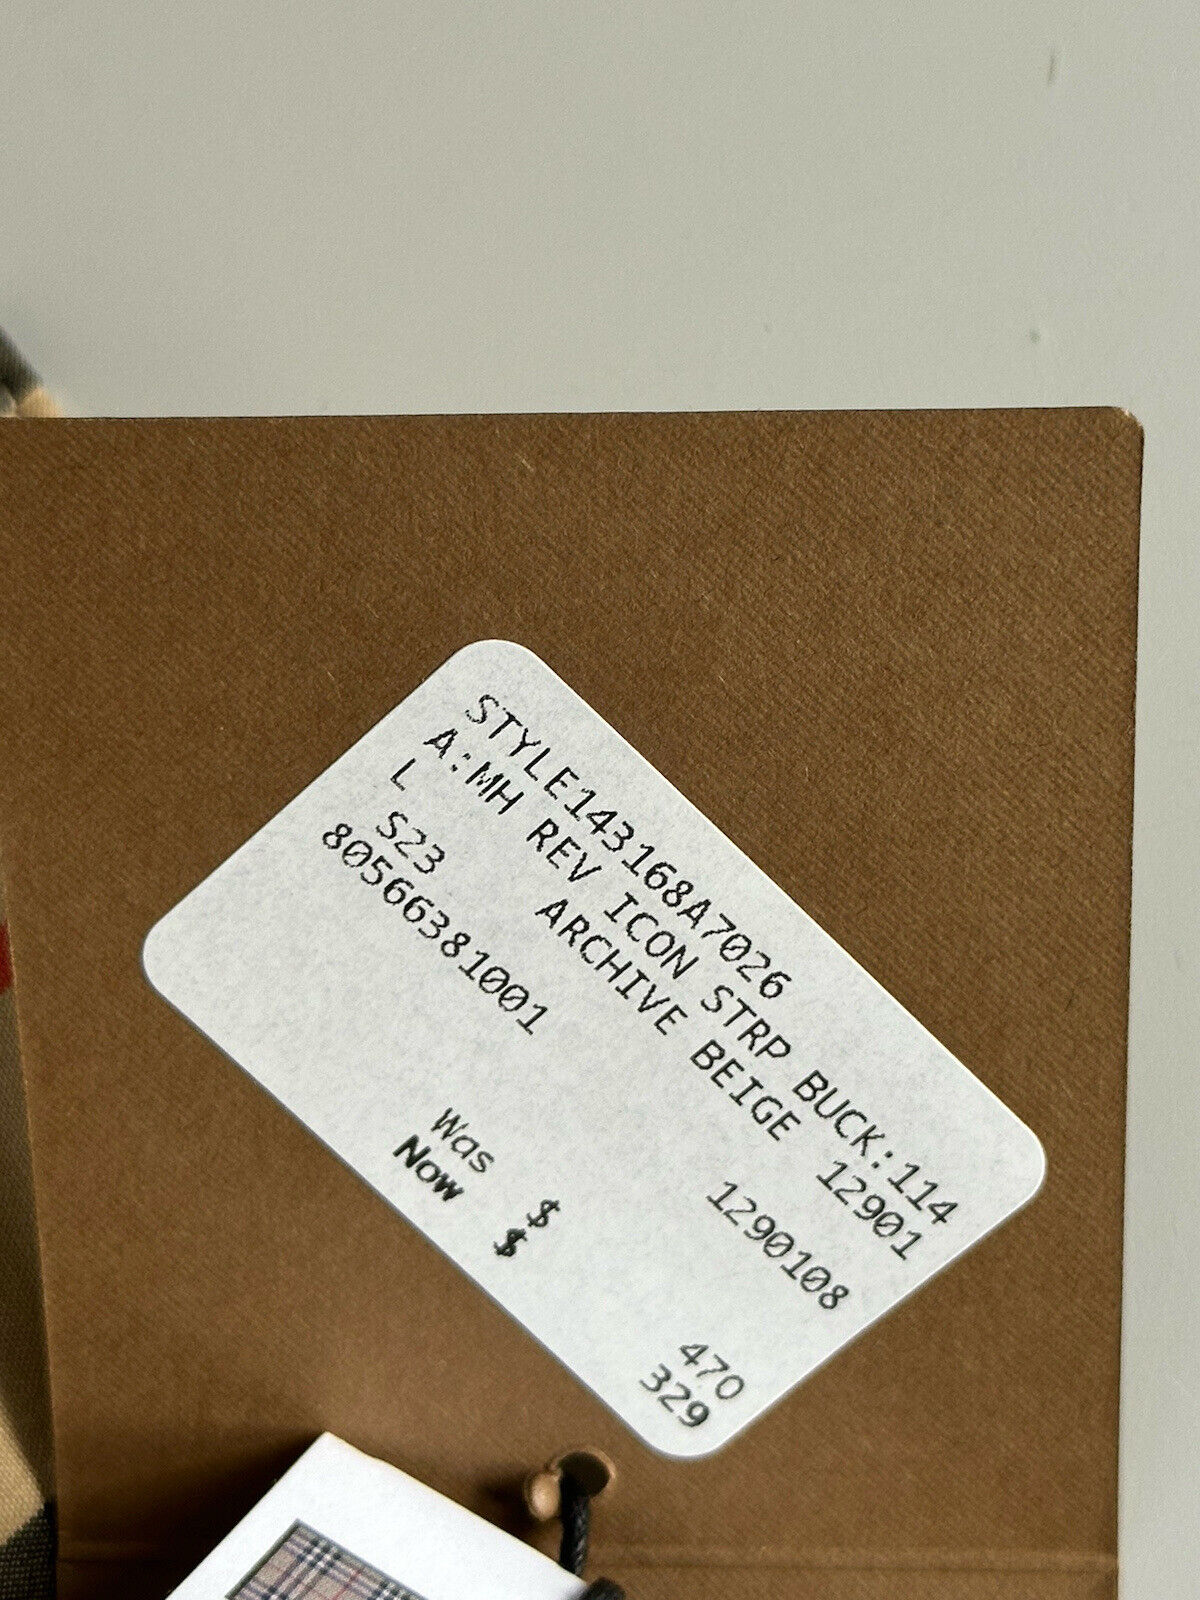 Neu mit Etikett: 470 $ Burberry Check Bucket Hat Cotton Archive Beige L (59 cm) 8056638 Italien 